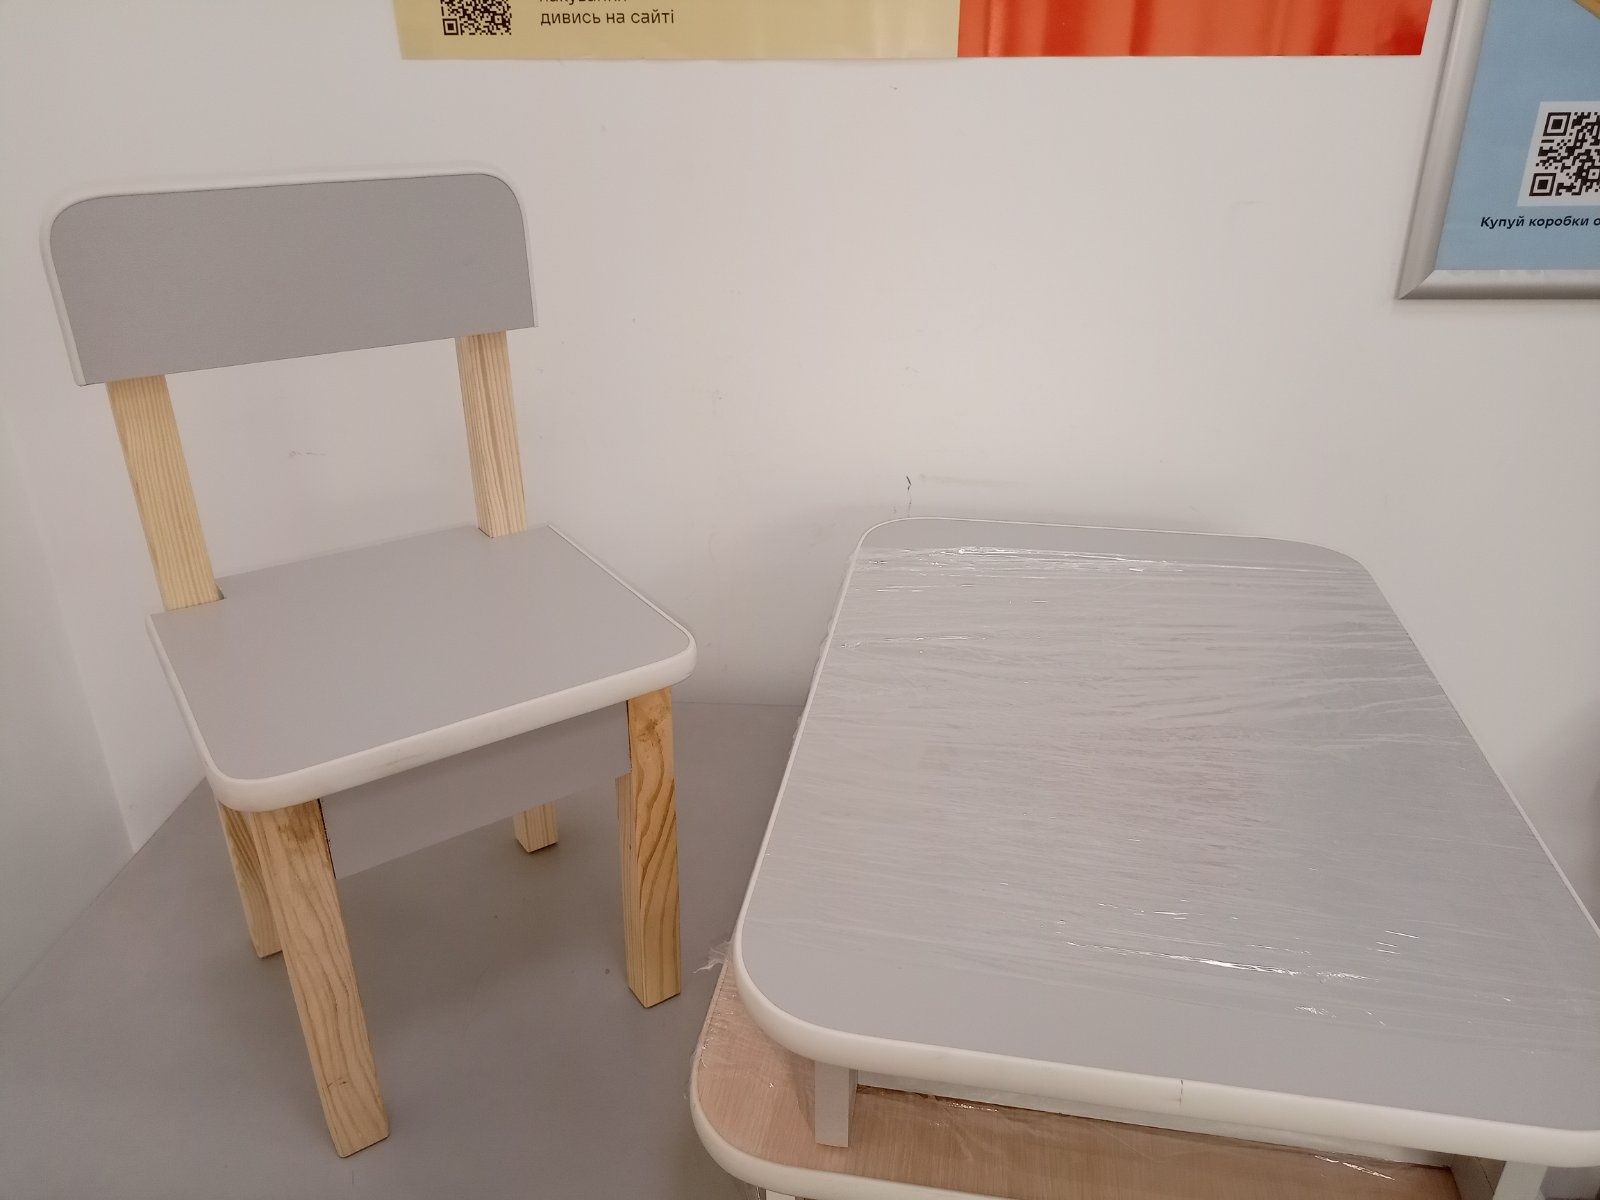 Детский столик и стульчик стіл і стілець детский стол и стул с полкой